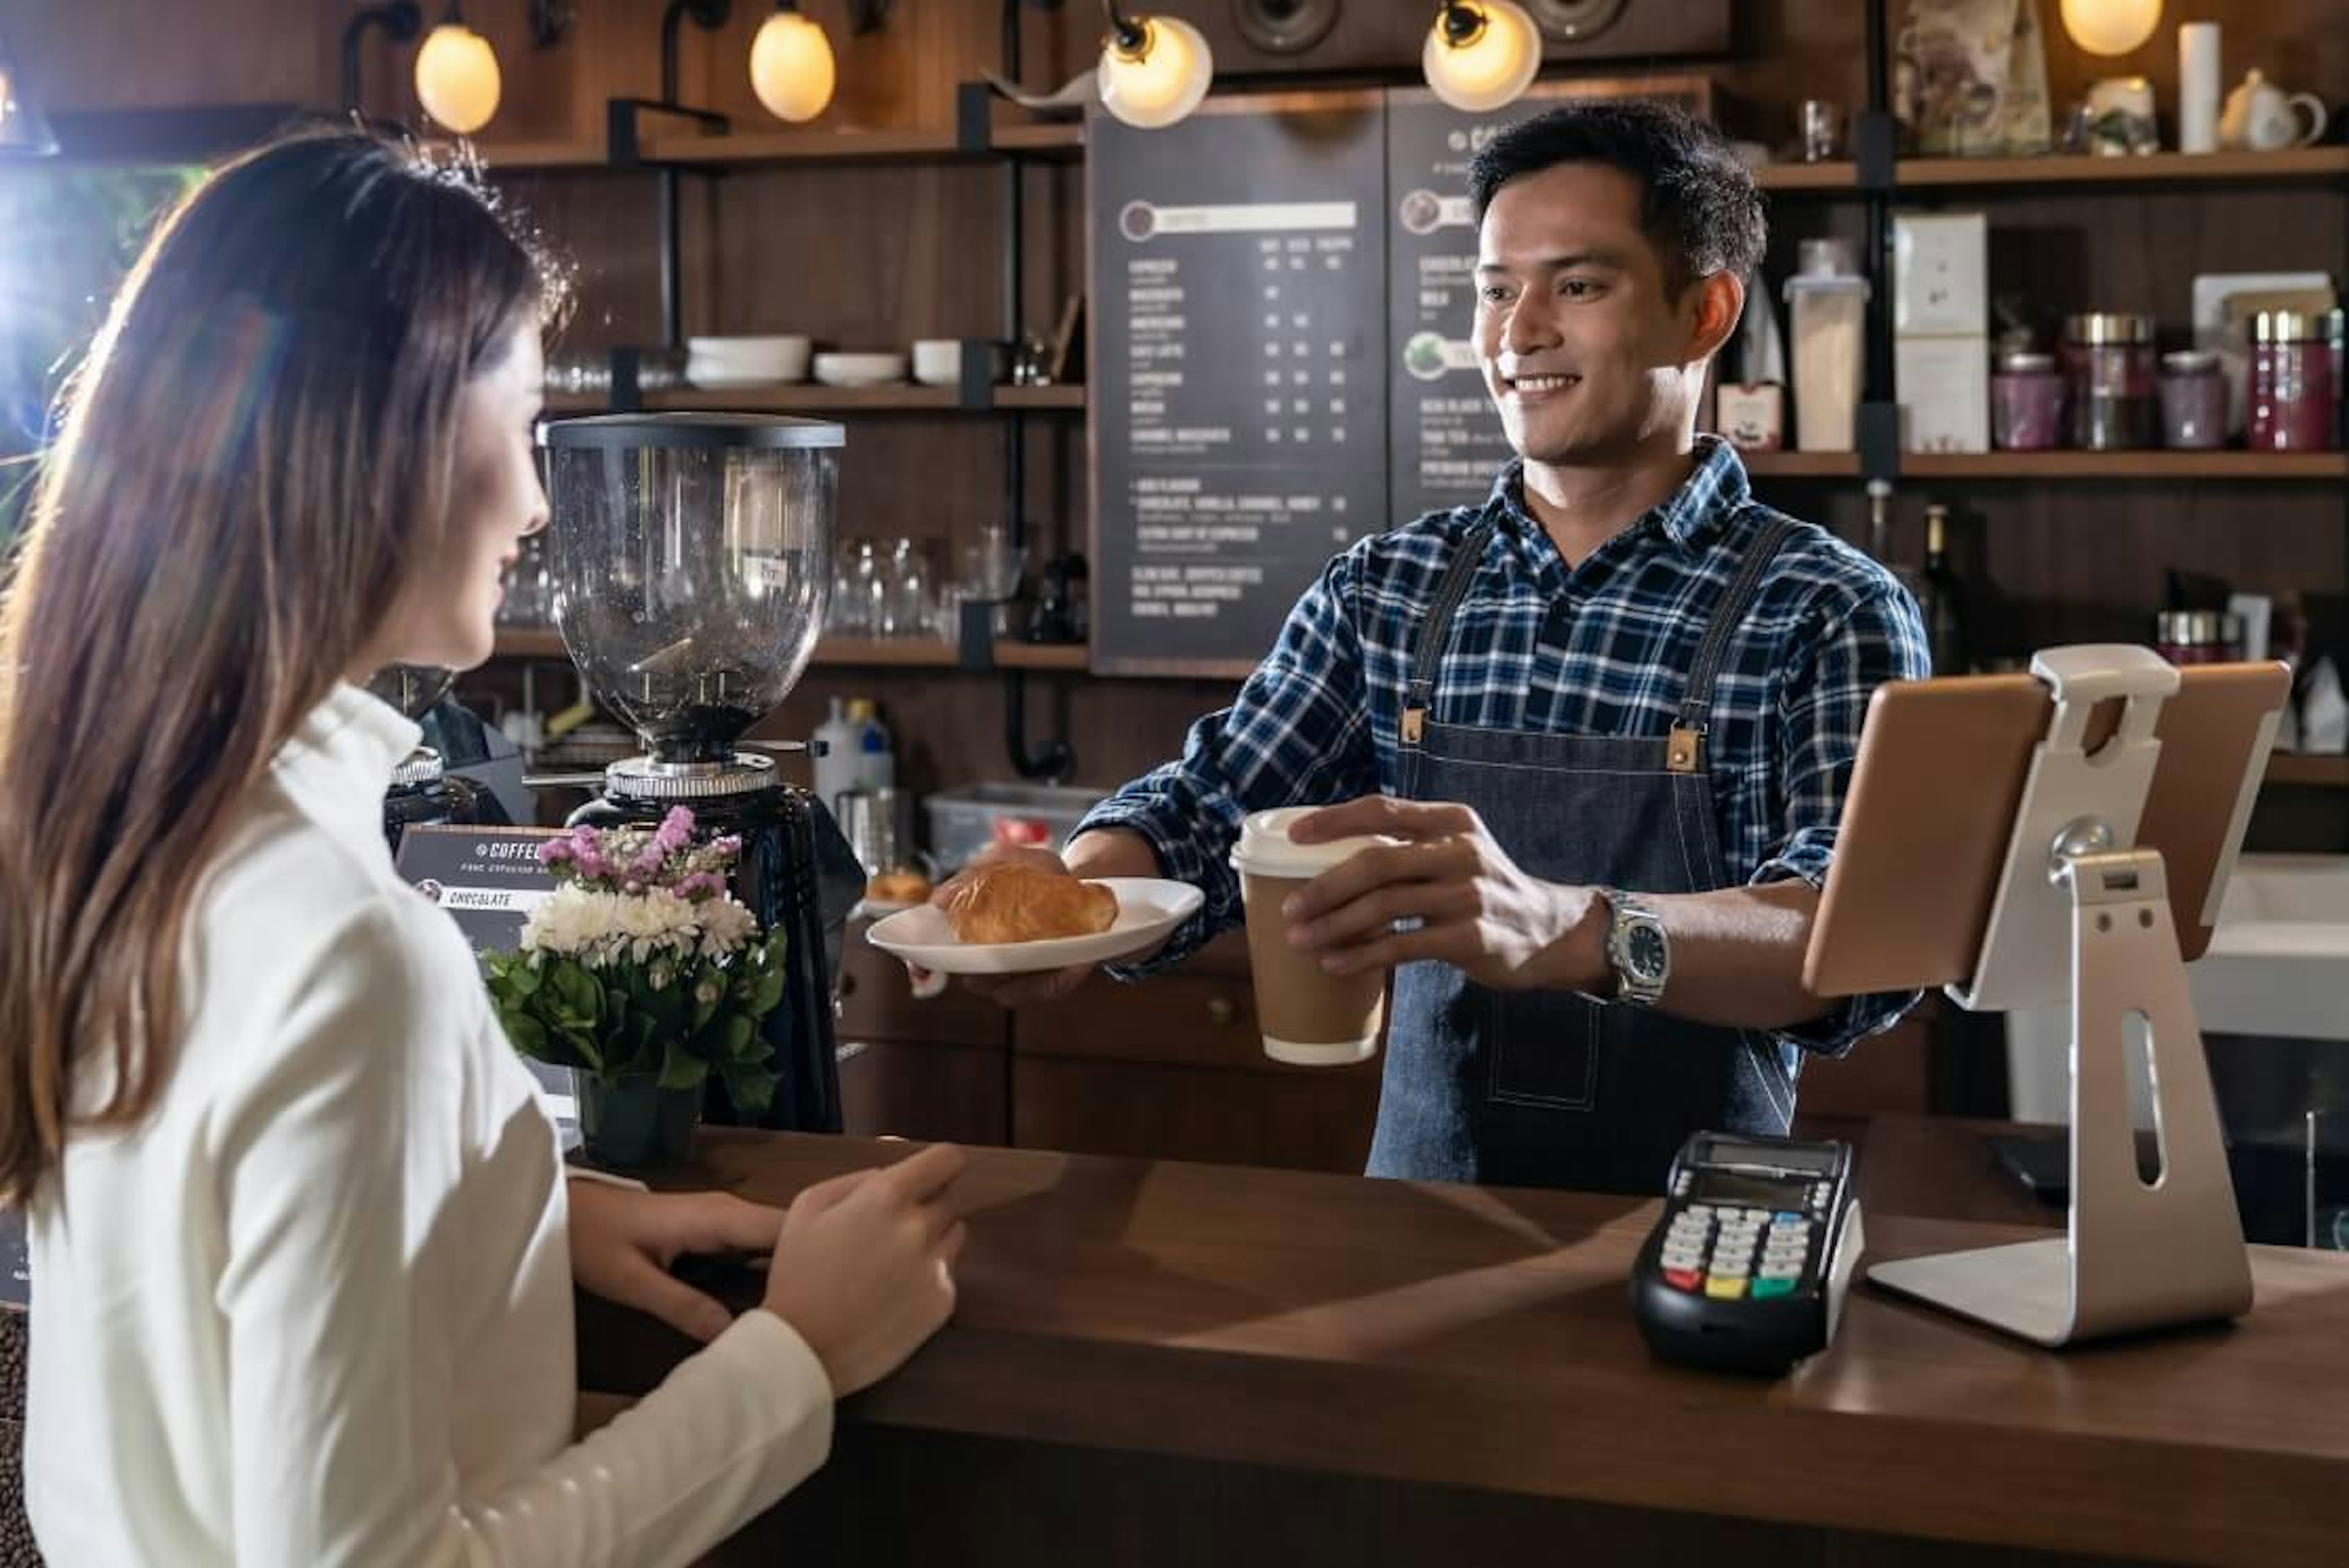 Un barista entrega un pan con café como parte del servicio y operación de una cafetería, que se obtiene al tomar un taller para abrir una cafetería como el nuestro.